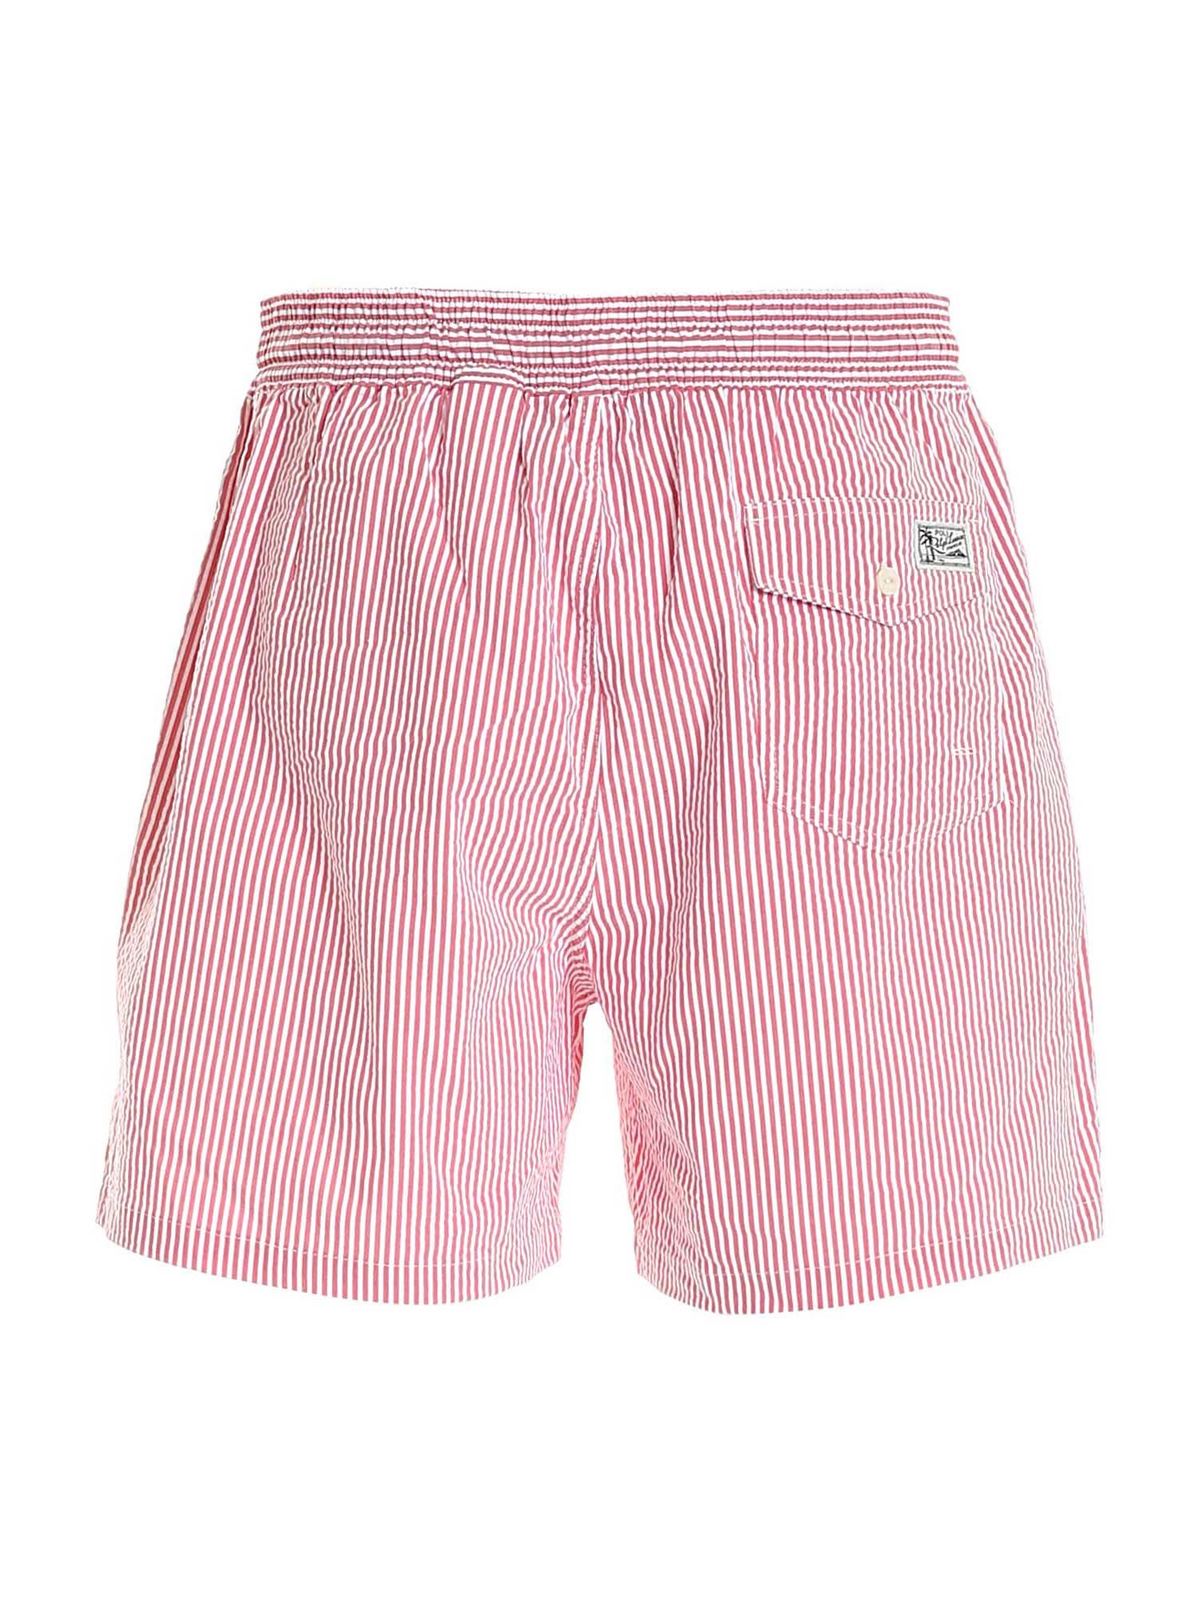 Swim shorts & swimming trunks Polo Ralph Lauren - Traveler striped swim ...